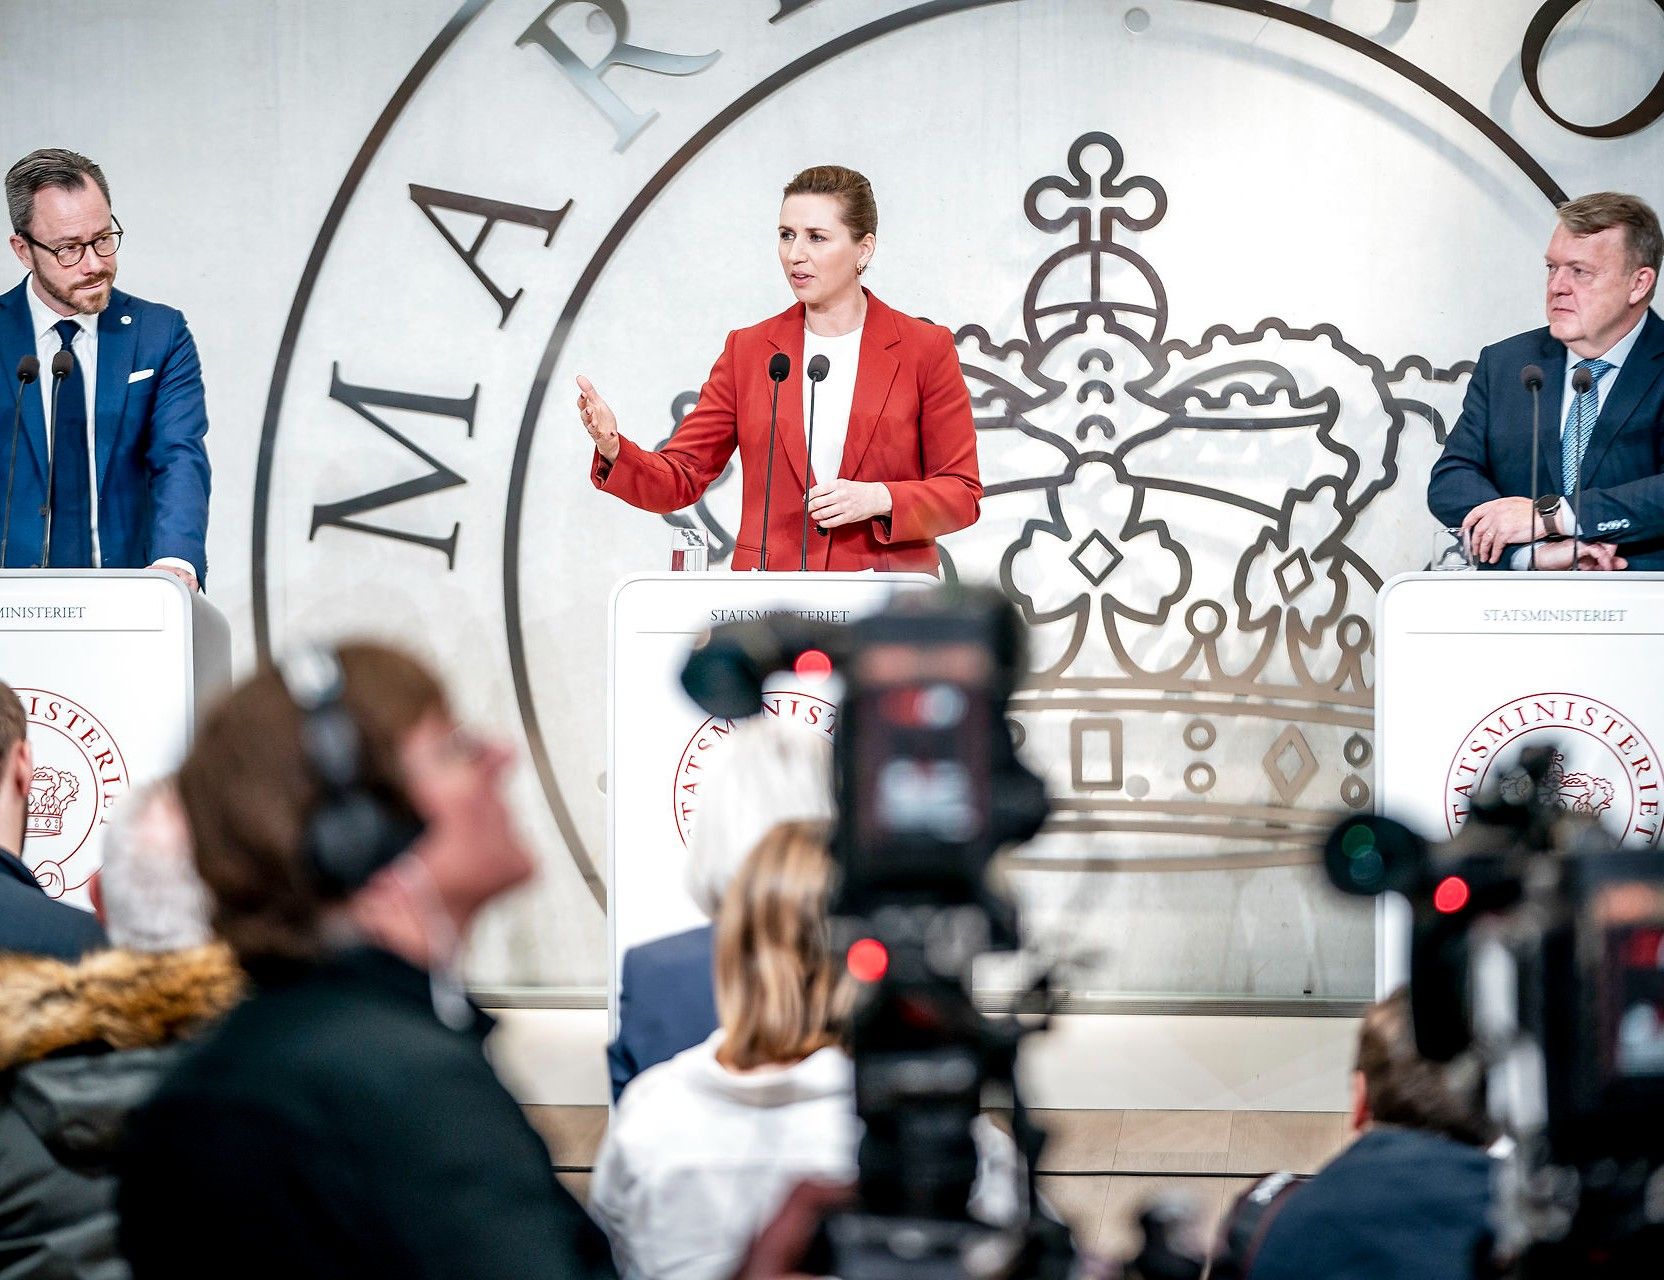 Partilederne i den nye regering lykkedes stort set med at signalere enhed på pressemødet. Foto: Mads Claus Rasmussen/Ritzau Scanpix